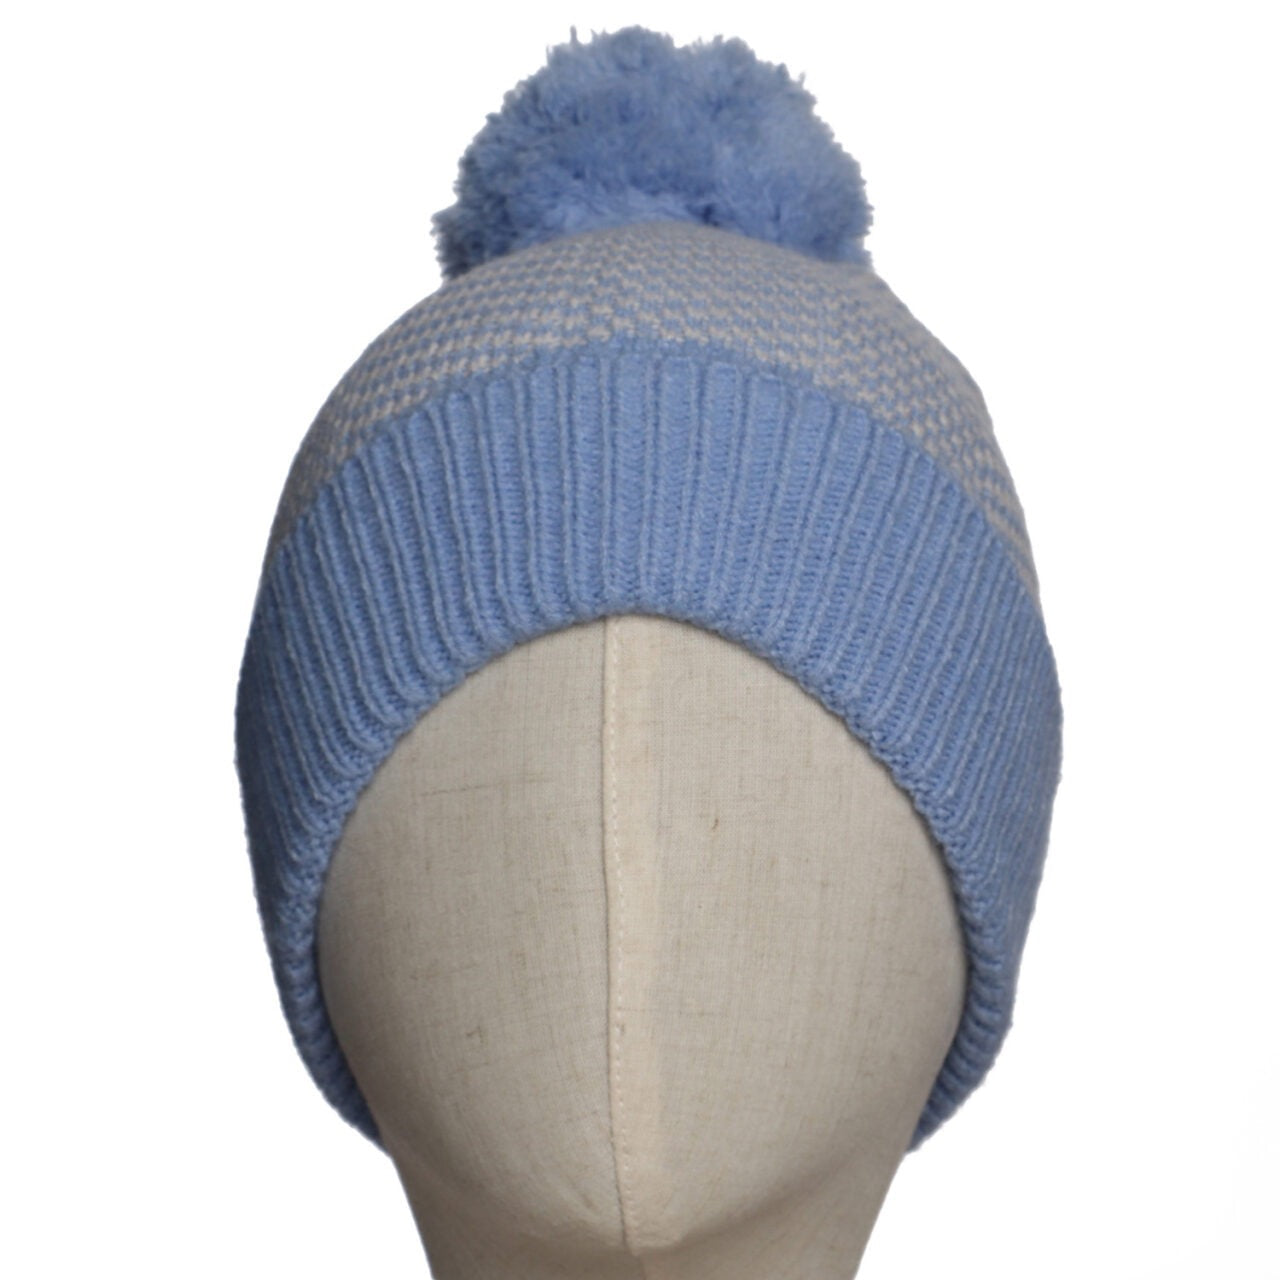 Zelly Herringbone Knitted Pom Pom Bobble Hat - Pale Blue